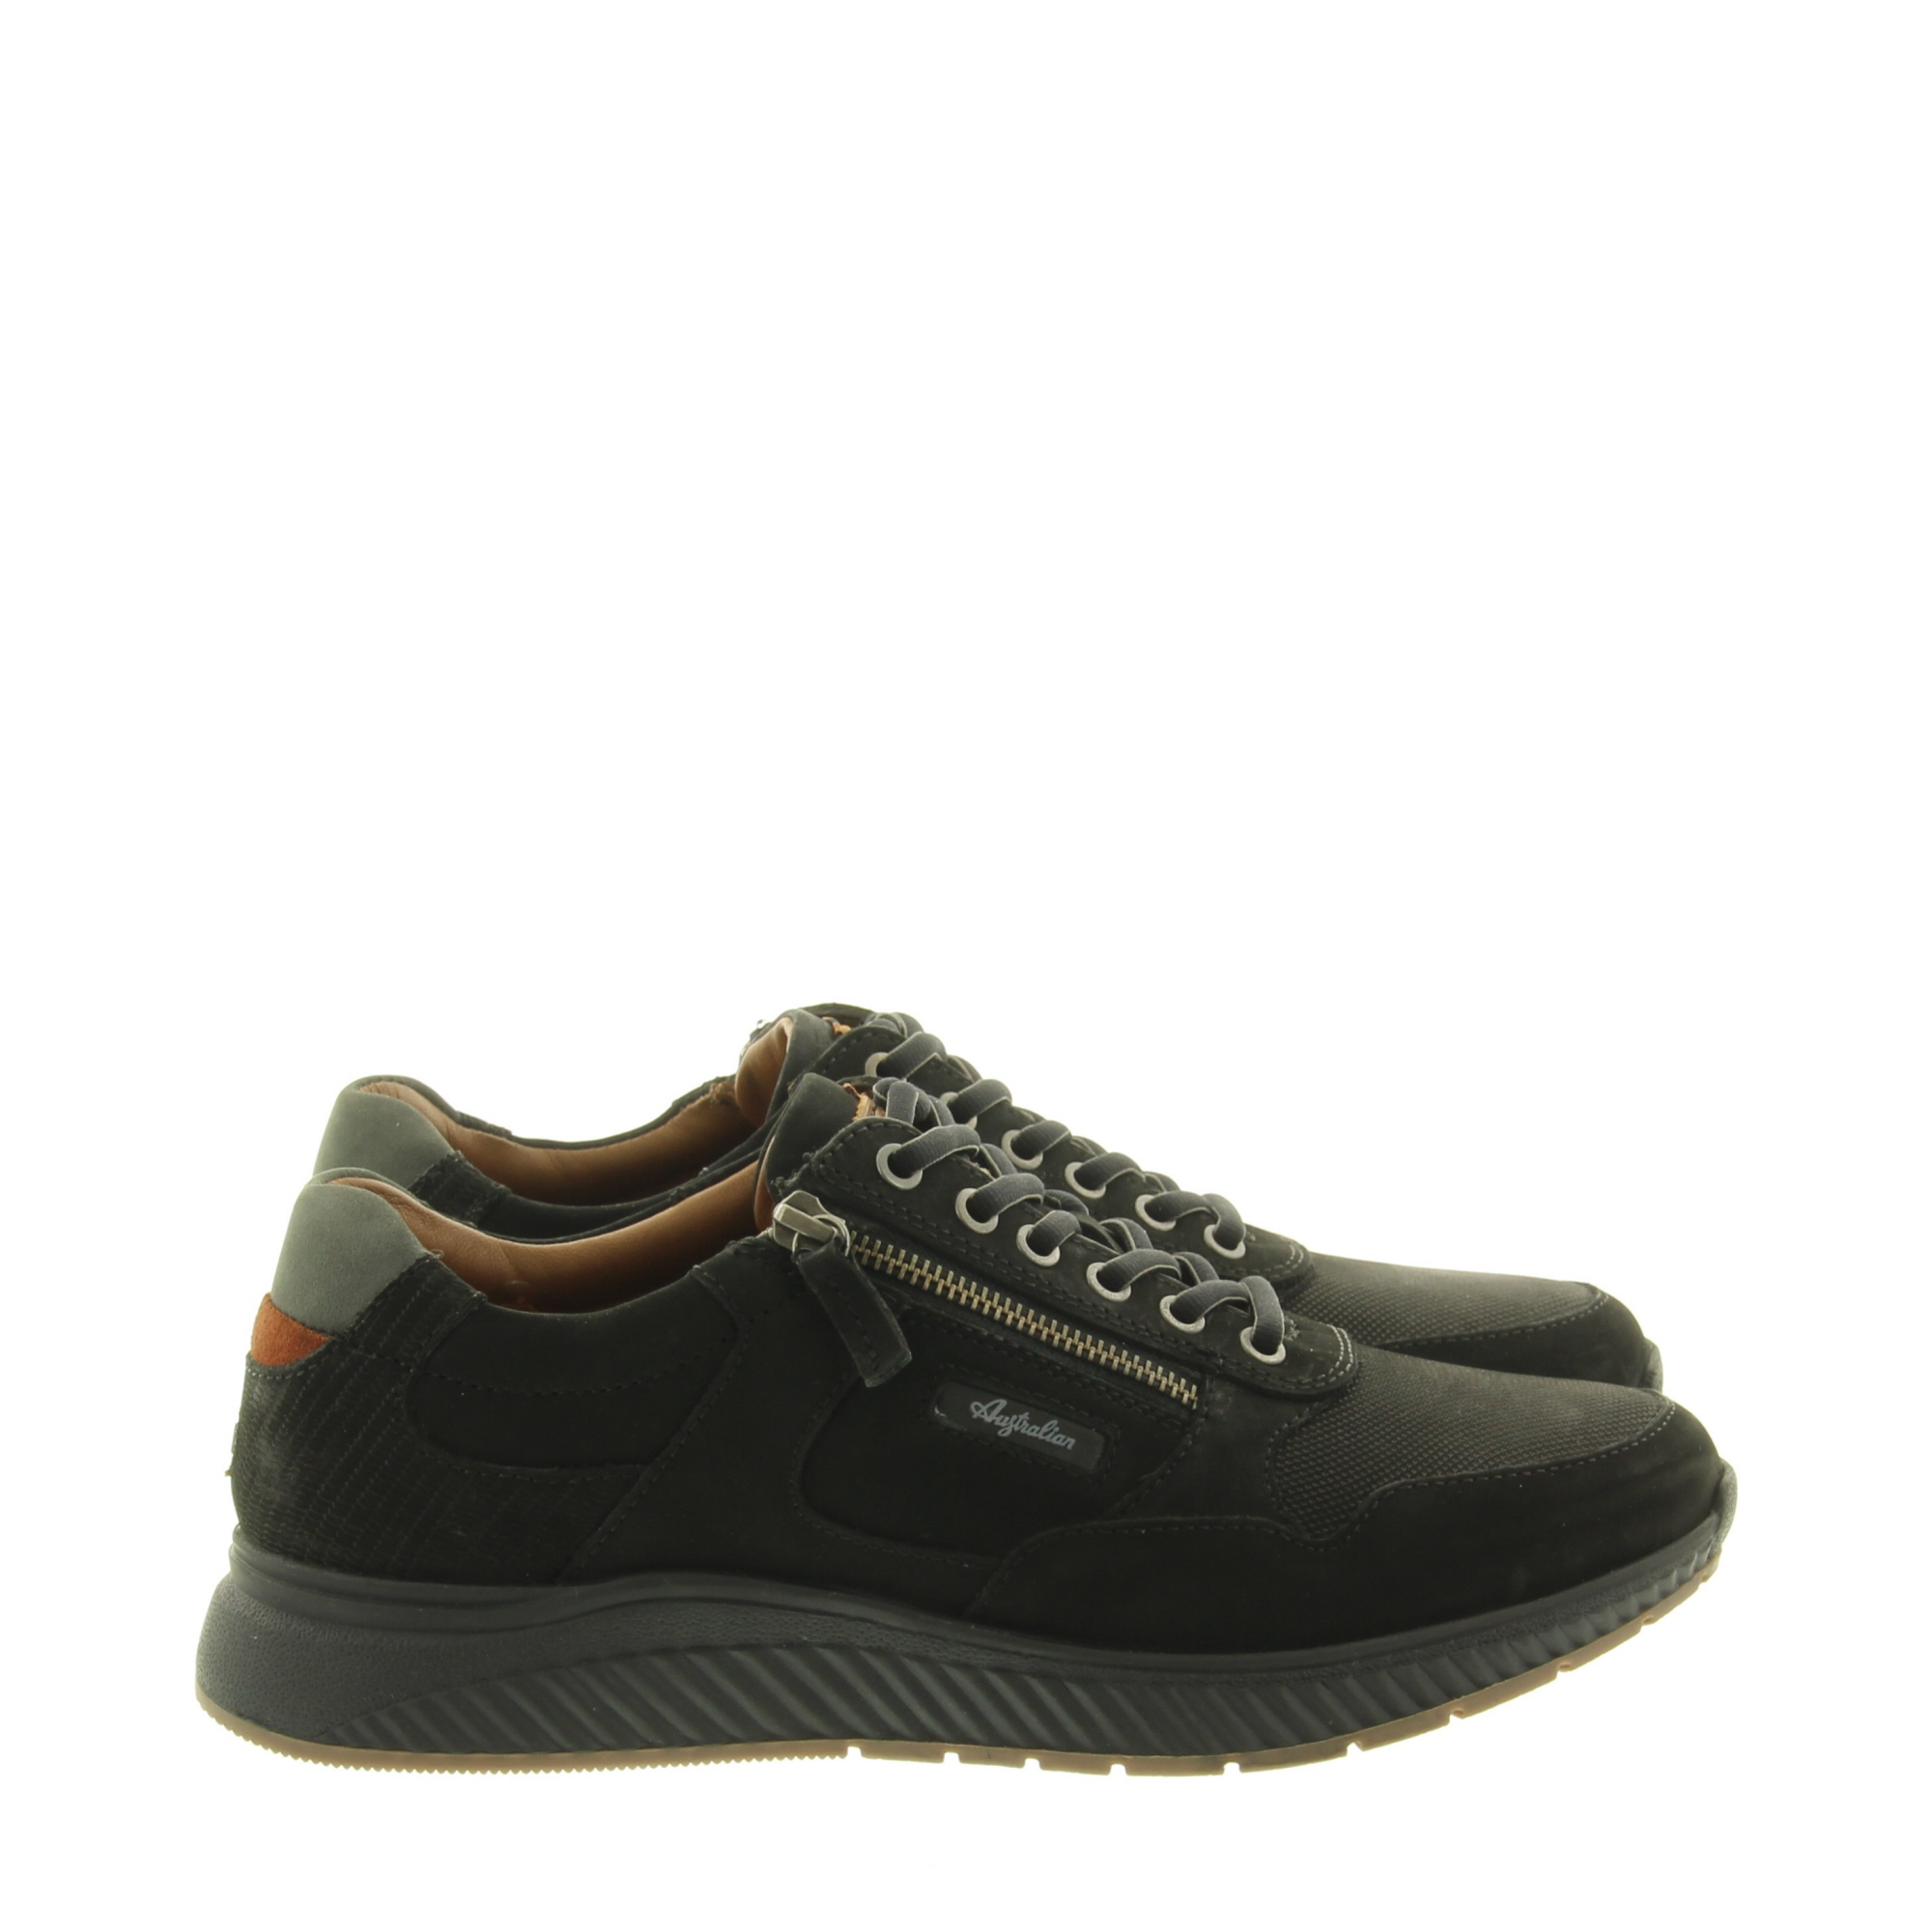 Australian Footwear 15.1590.01 Phil A00 Black